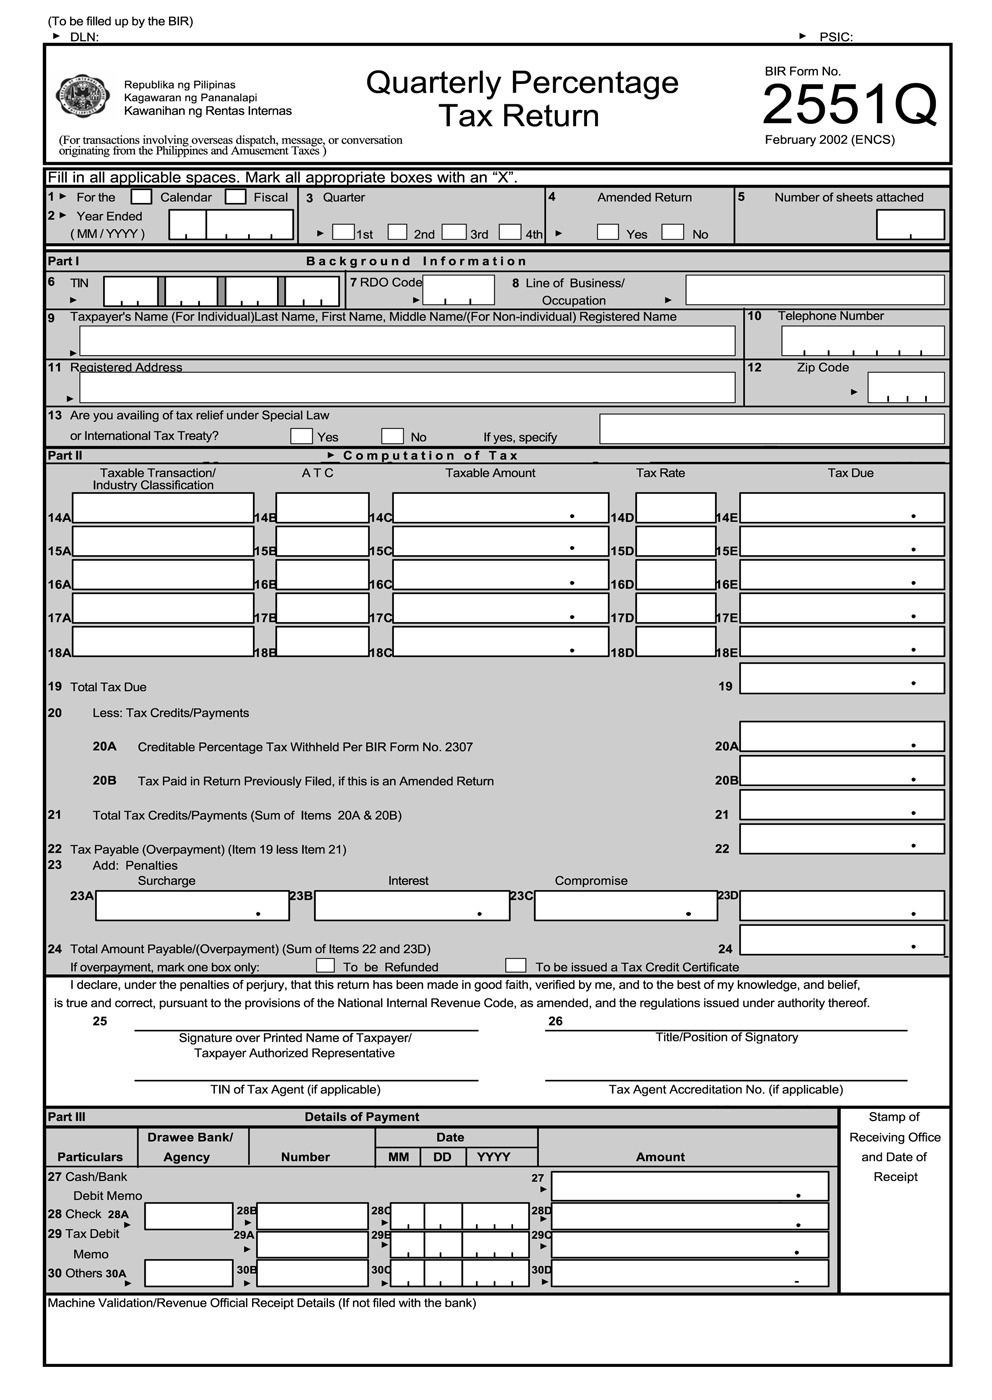 BIR Form 2551Q Quarterly Percentage Tax Return